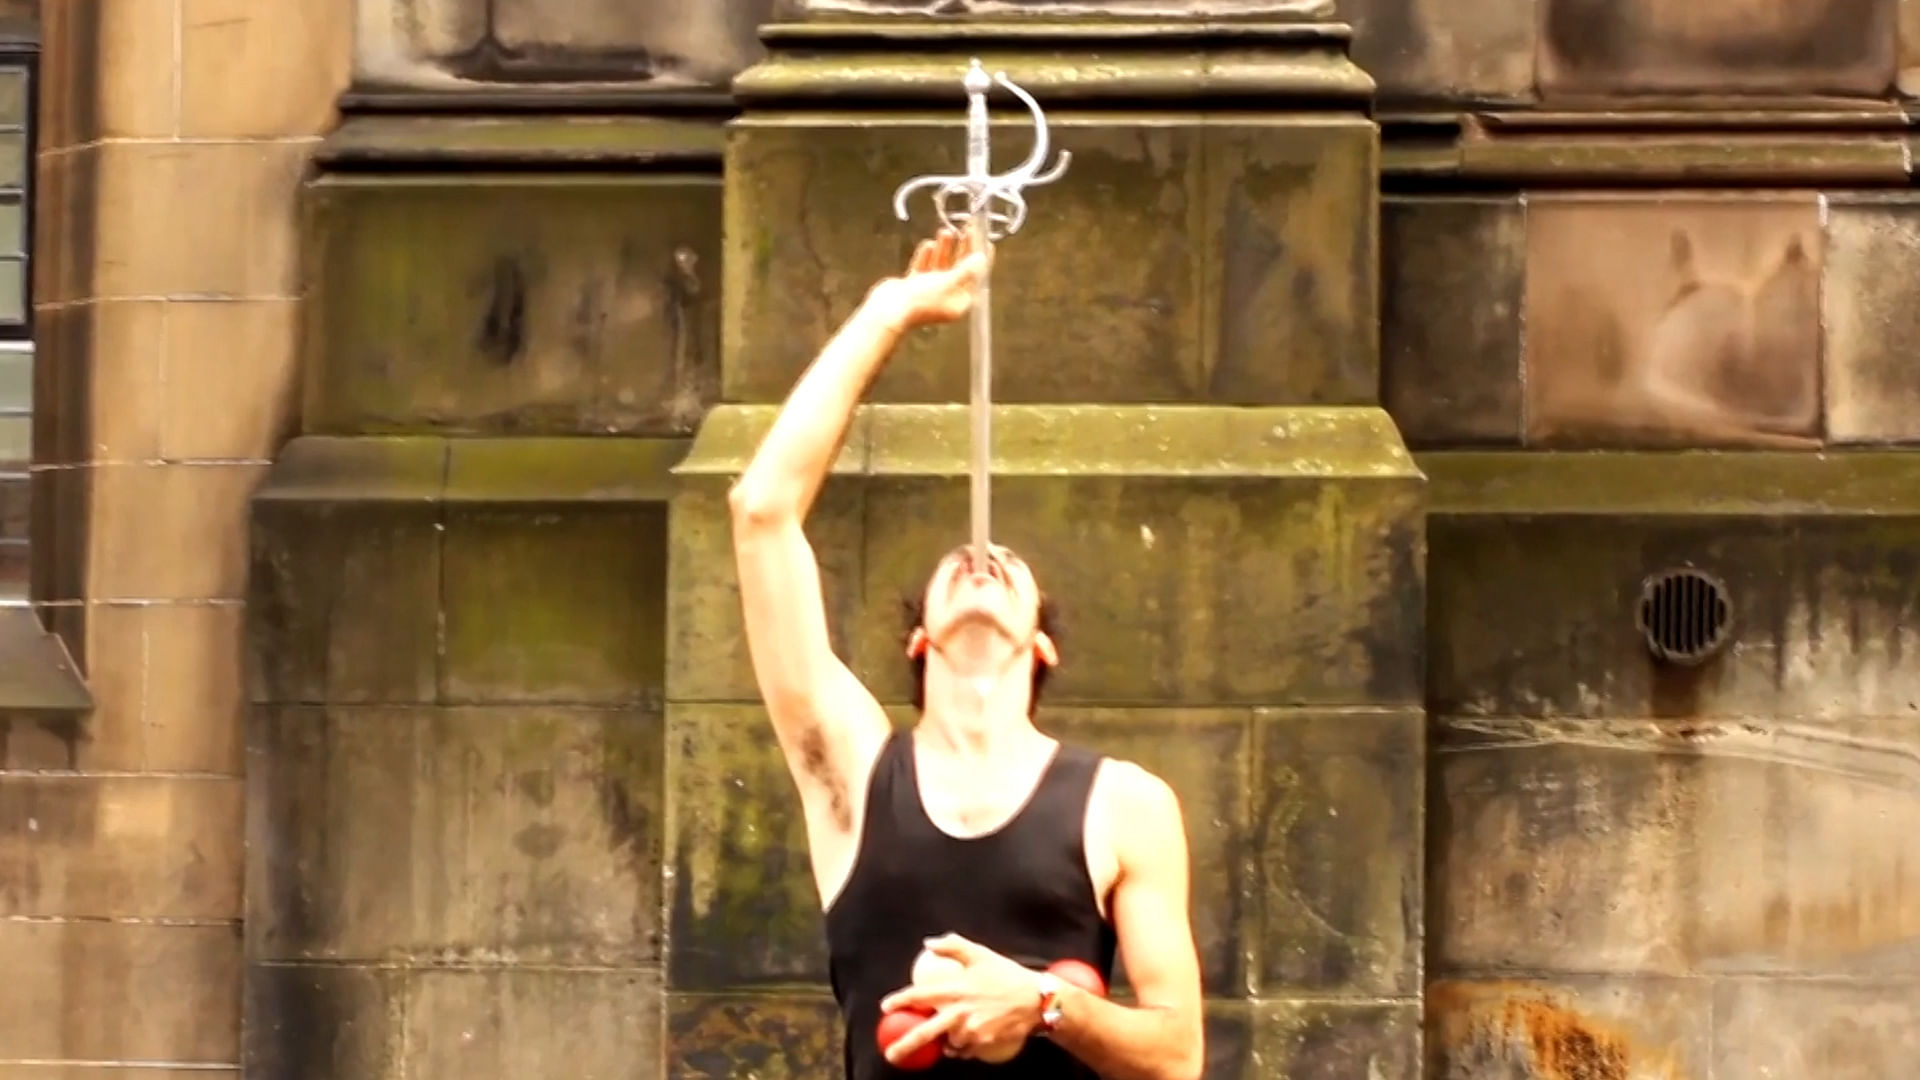 This man swallows a sword and juggled with balls. (Photo: AP screengrab)